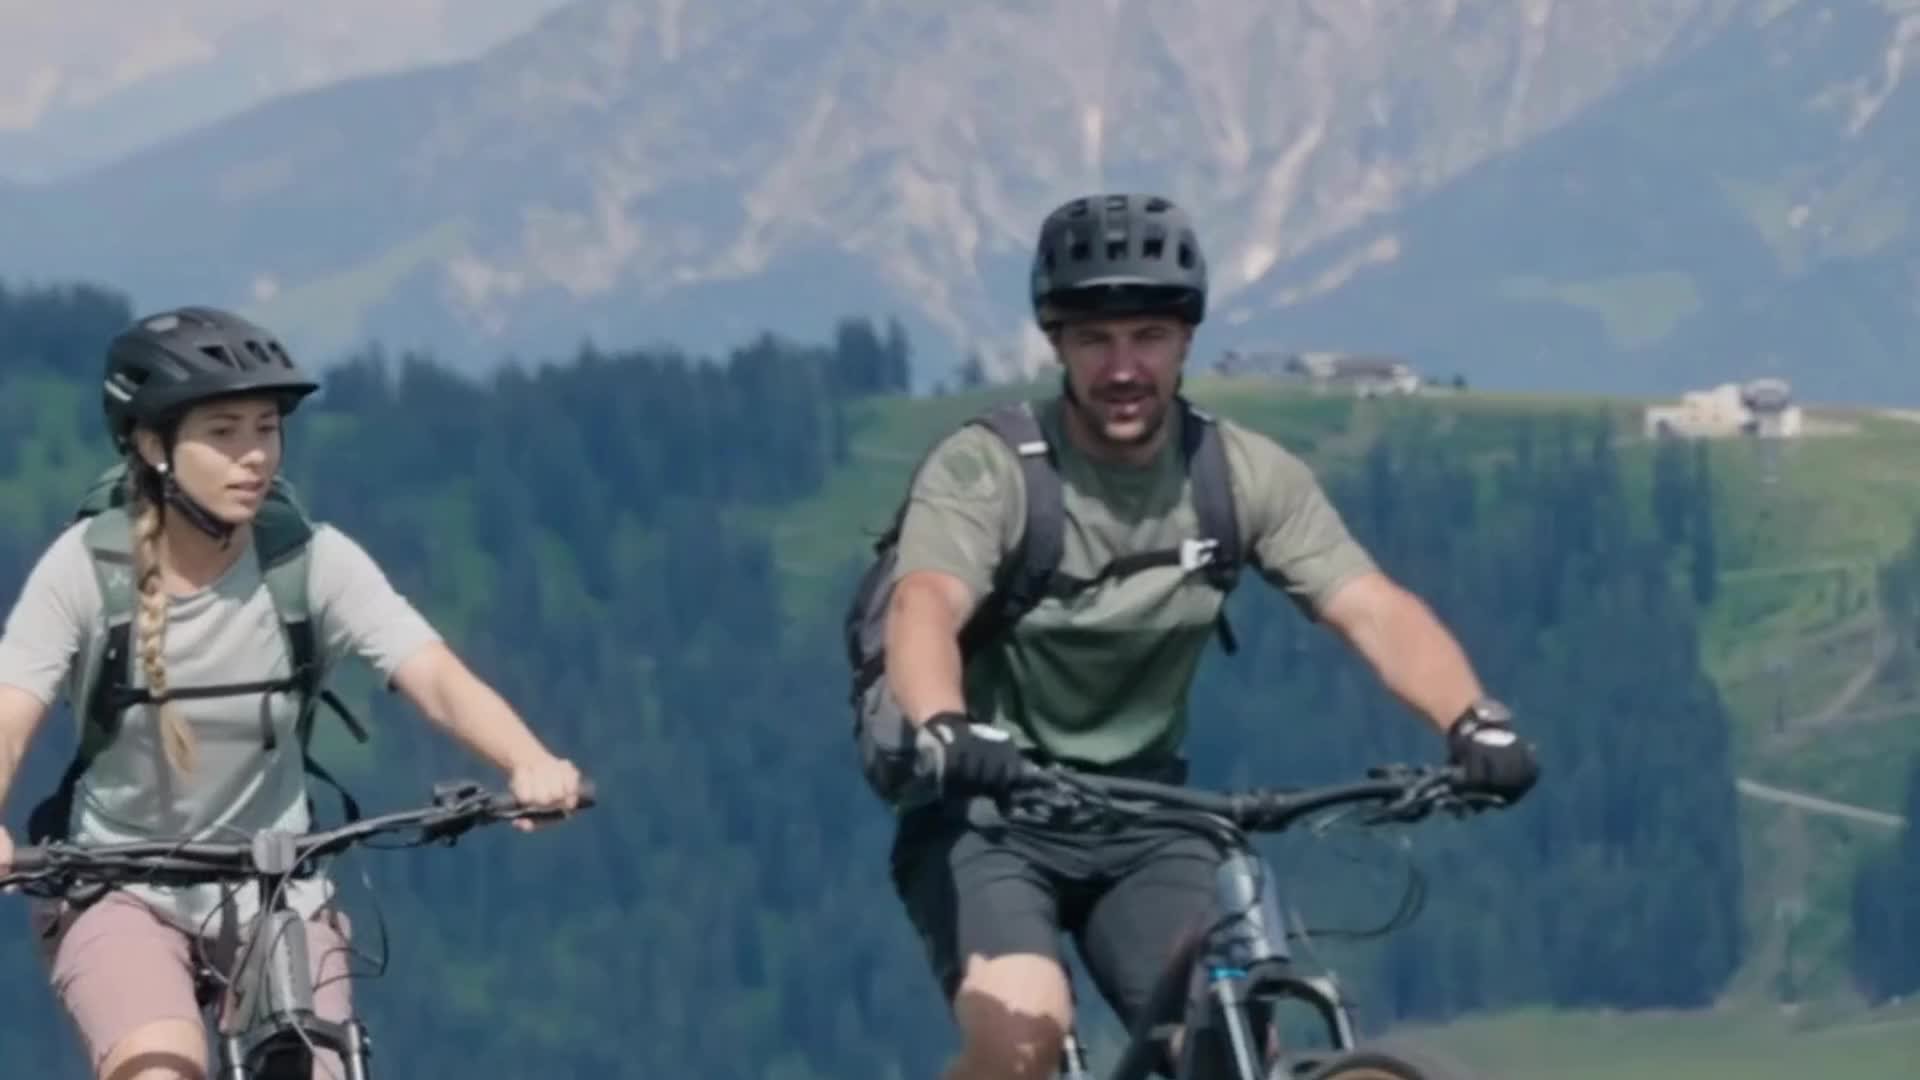 Biketour at the mountain